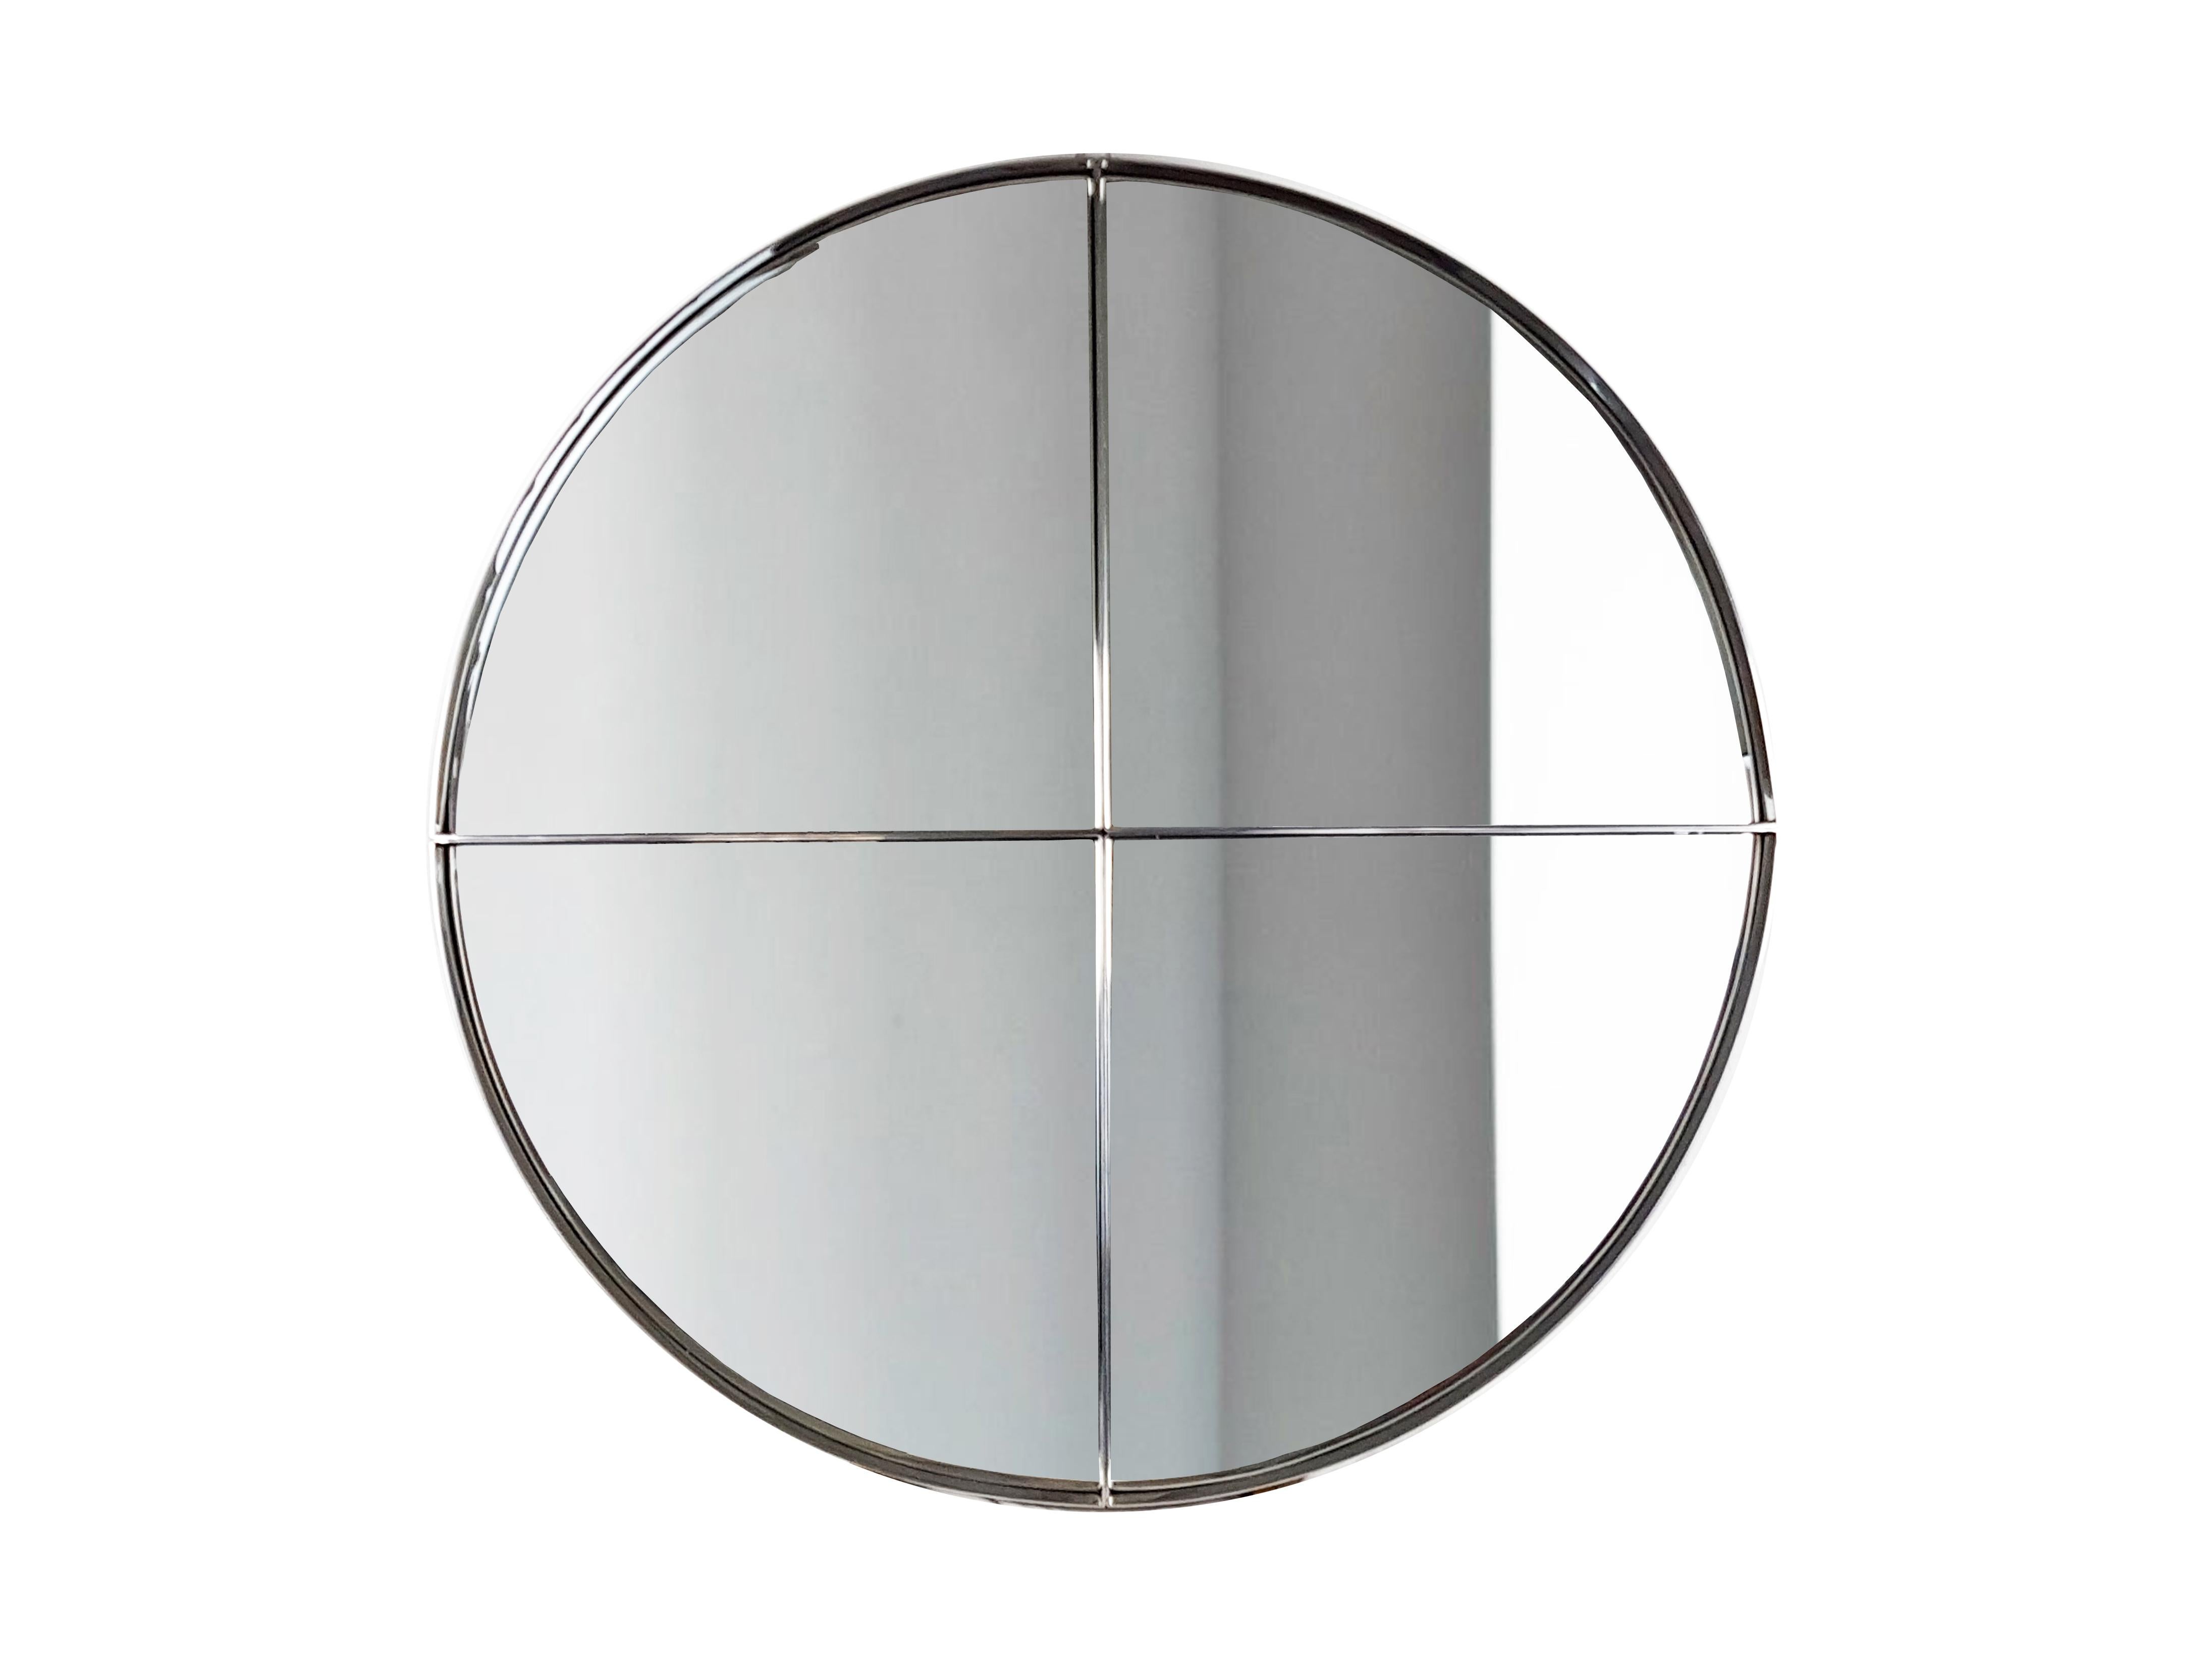 Ce miroir aux dimensions considérables (120 cm de diamètre) est formé de 4 segments de cercle, réunis par une paire de vis au dos de la structure. En raison de son poids considérable, le miroir pourrait être expédié en 4 parties distinctes.